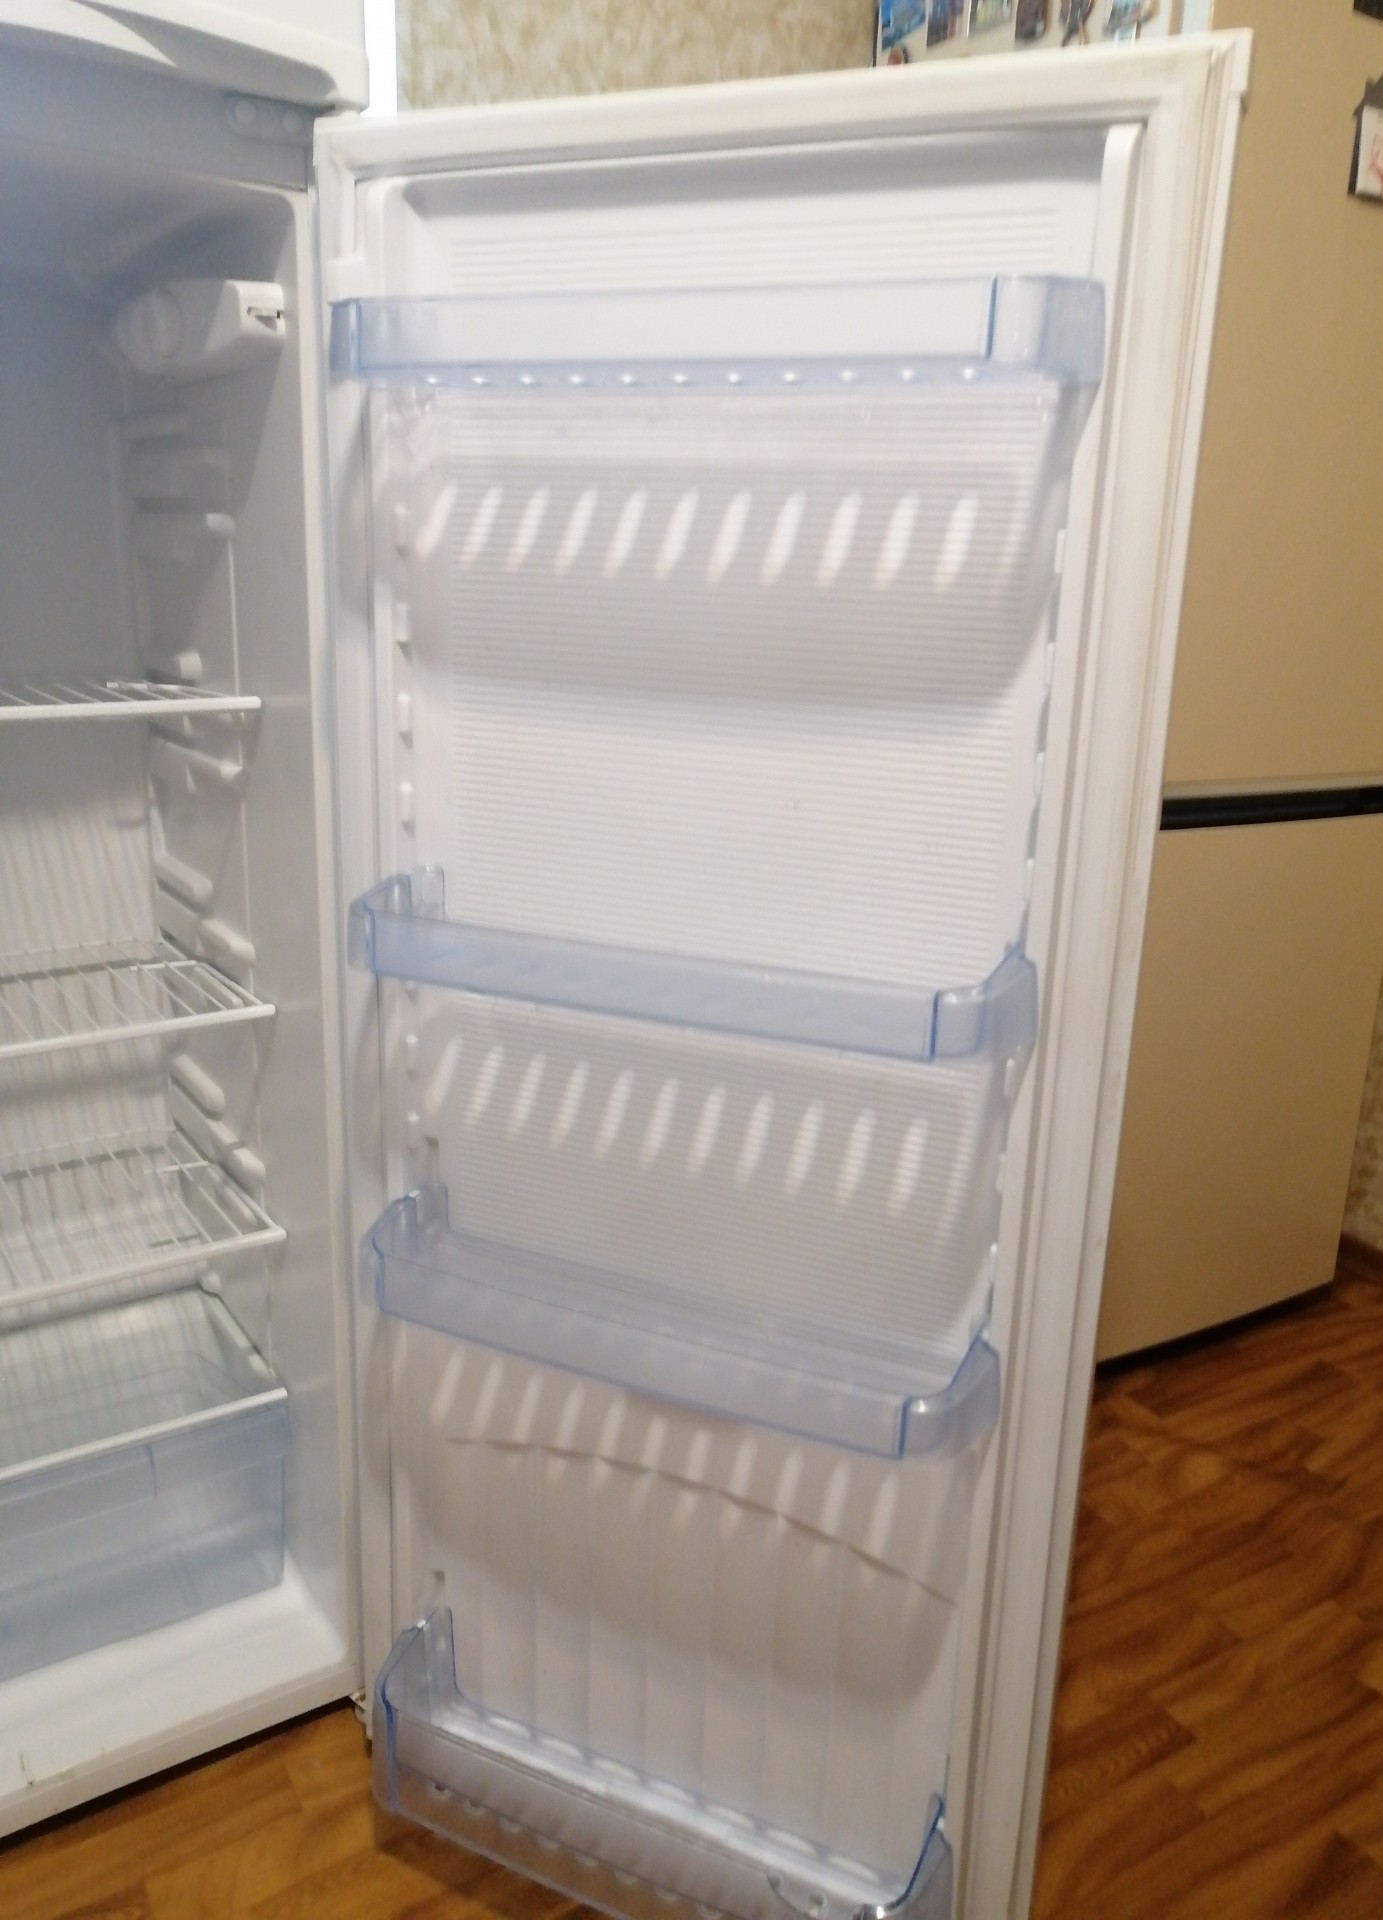 Холодильник Днепр ДХ-416-7-010 -. Днепр 2мс холодильник. Холодильник Днепр вес кг. Холодильник Днепр внутри.